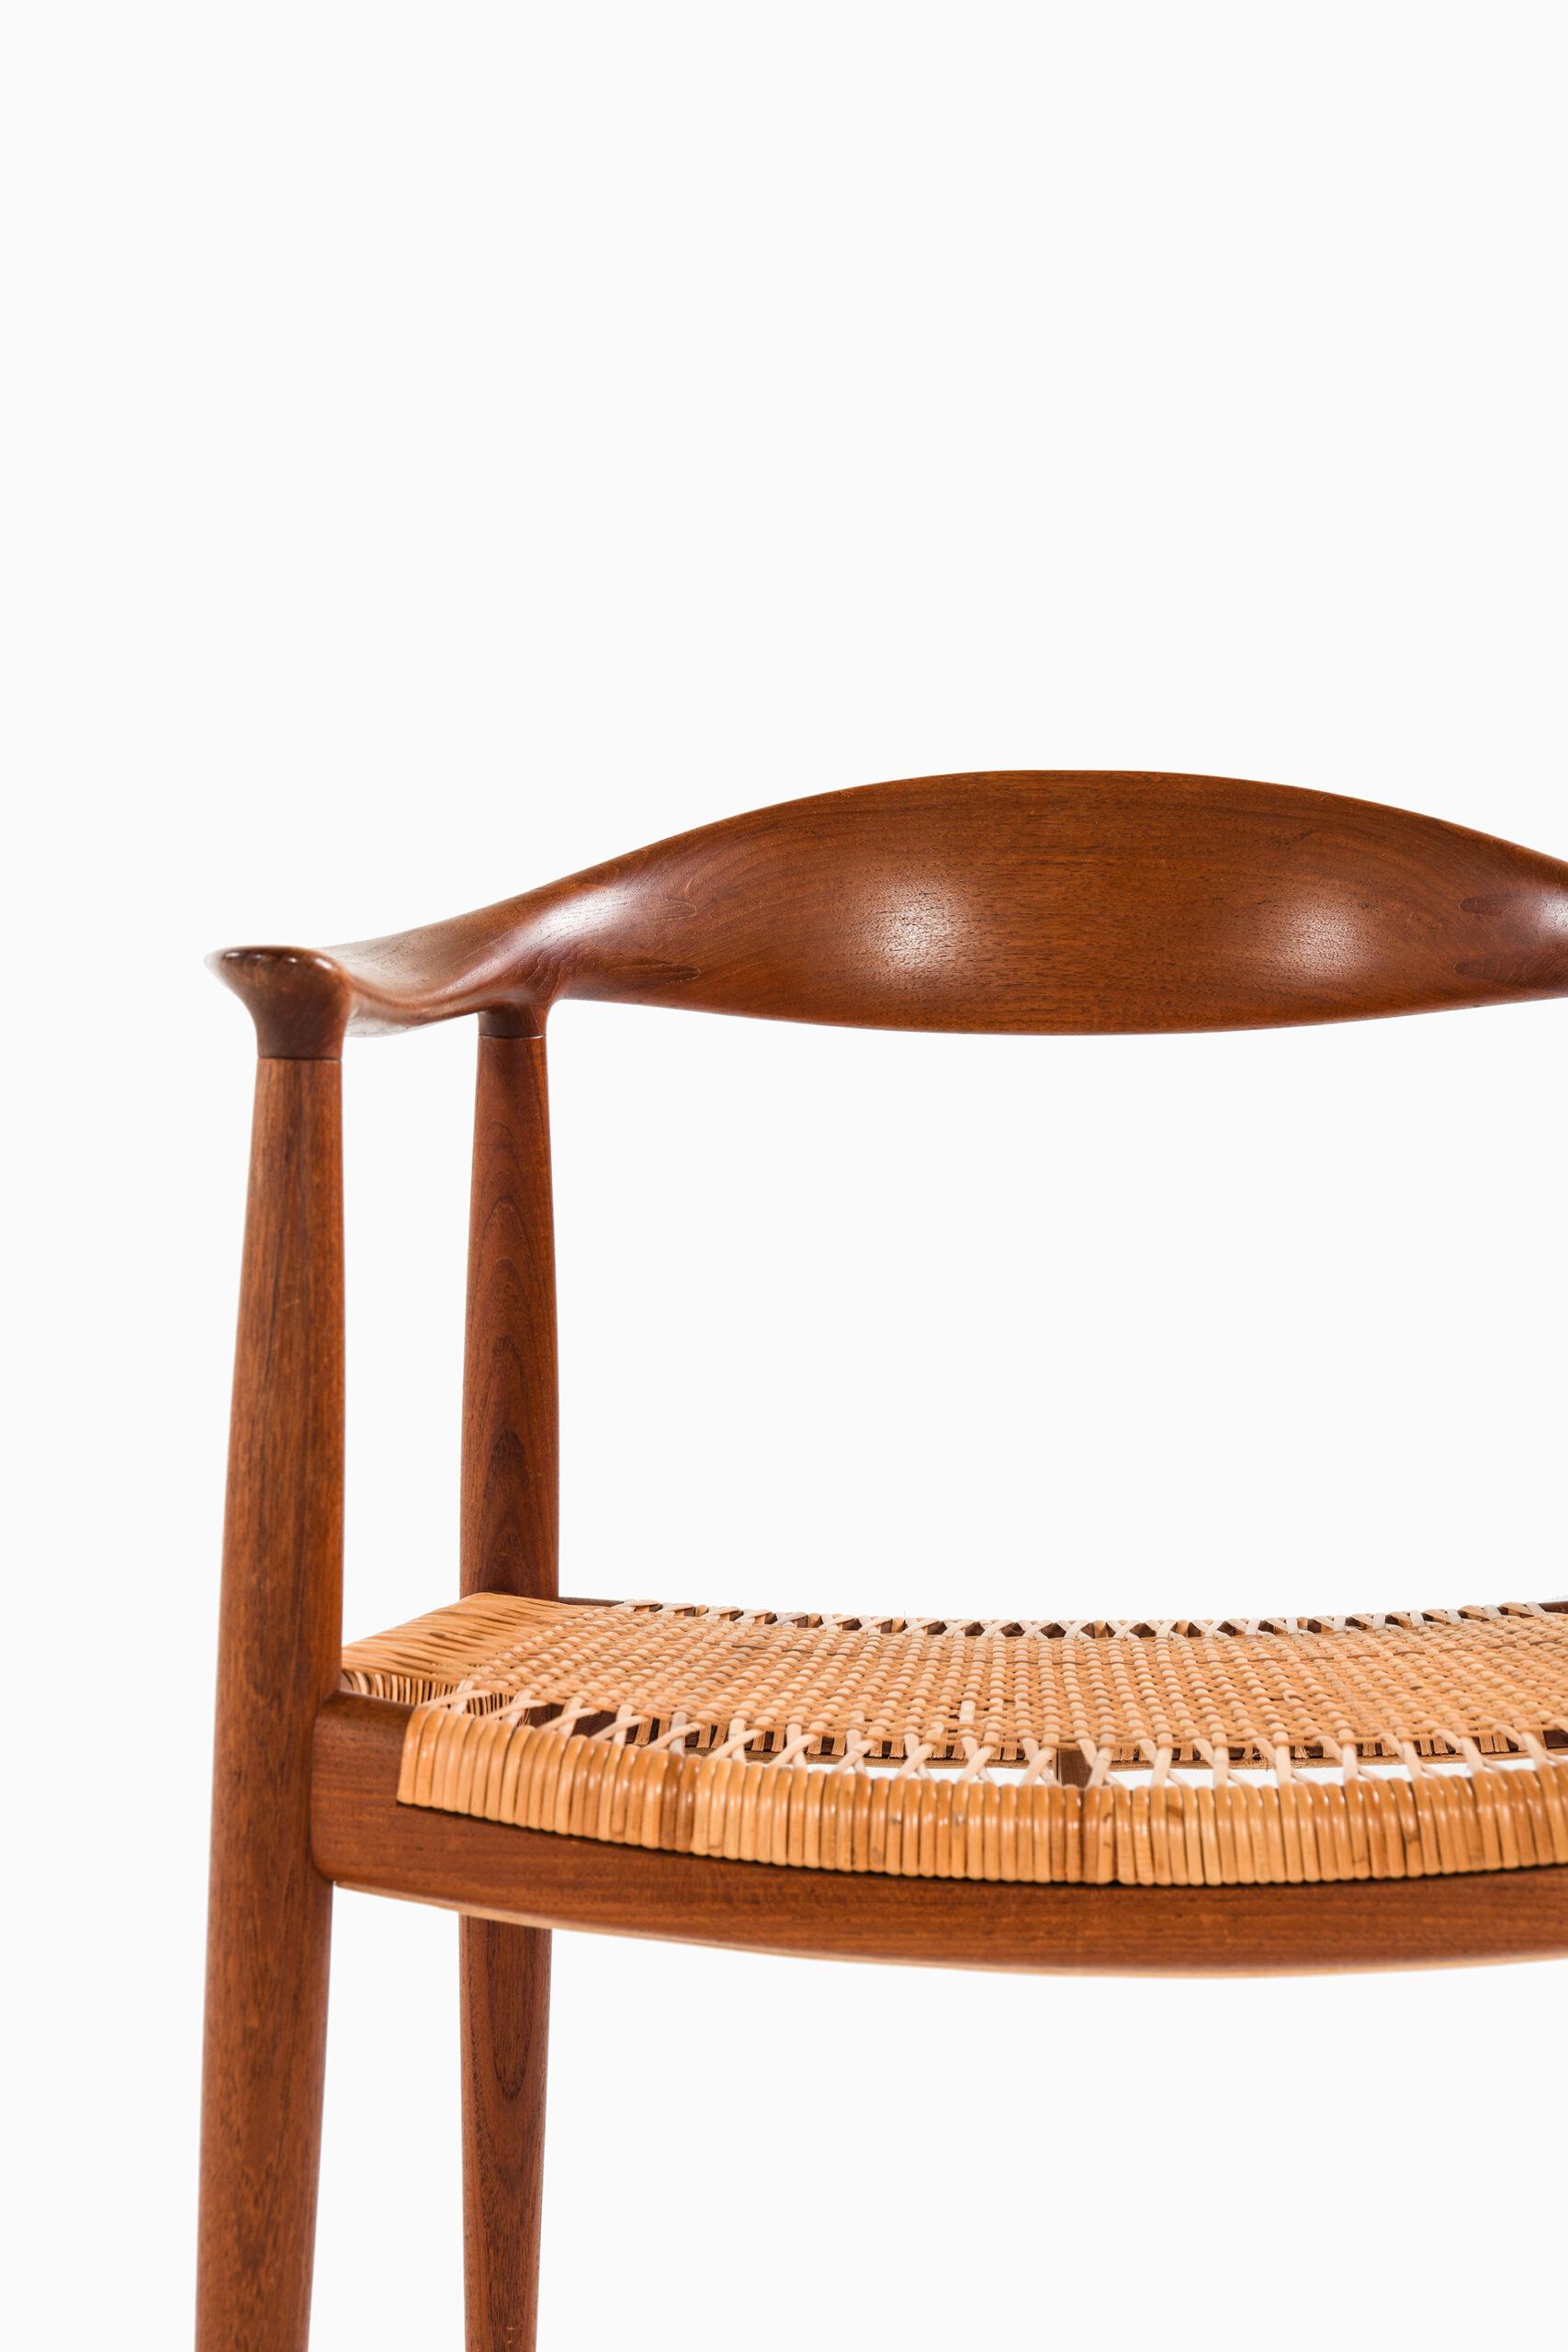 Rare fauteuil modèle JH-501 / The Chair dessiné par Hans Wegner. Produit par Johannes Hansen au Danemark.